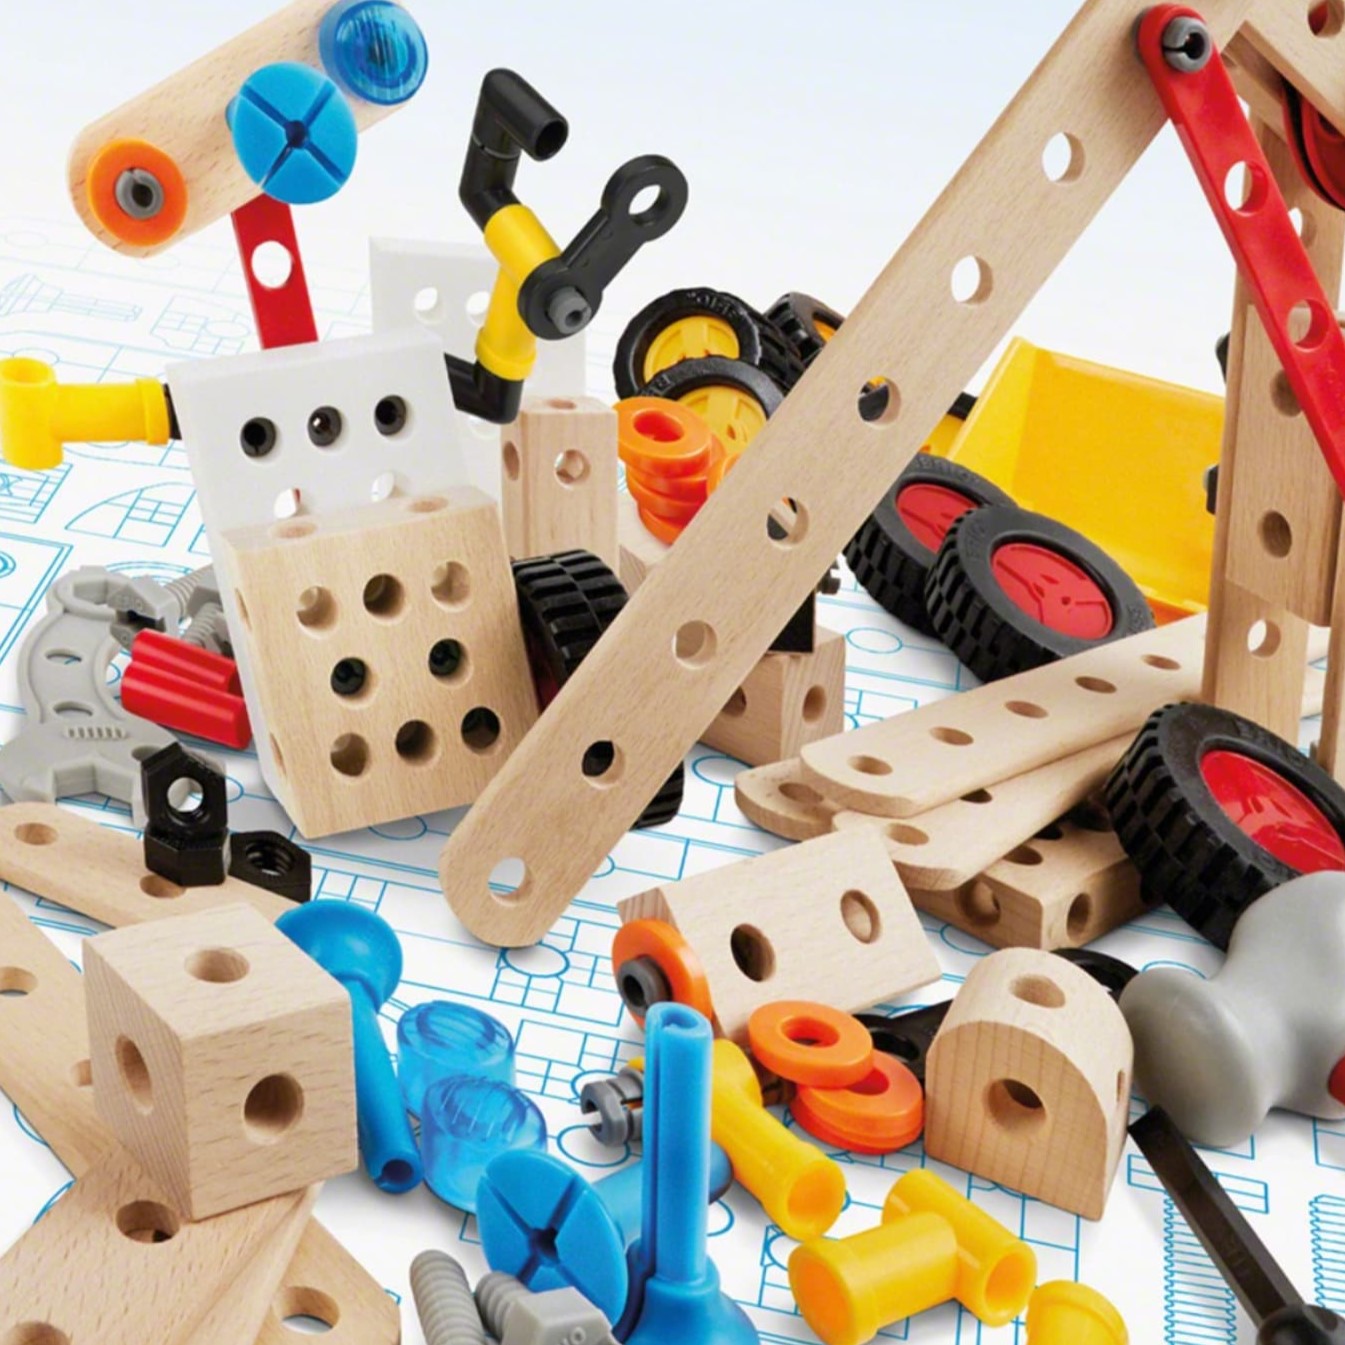 BRIO ブリオ ビルダー アクティビティセット 全210ピース 大工さん 知育玩具 正規輸入品